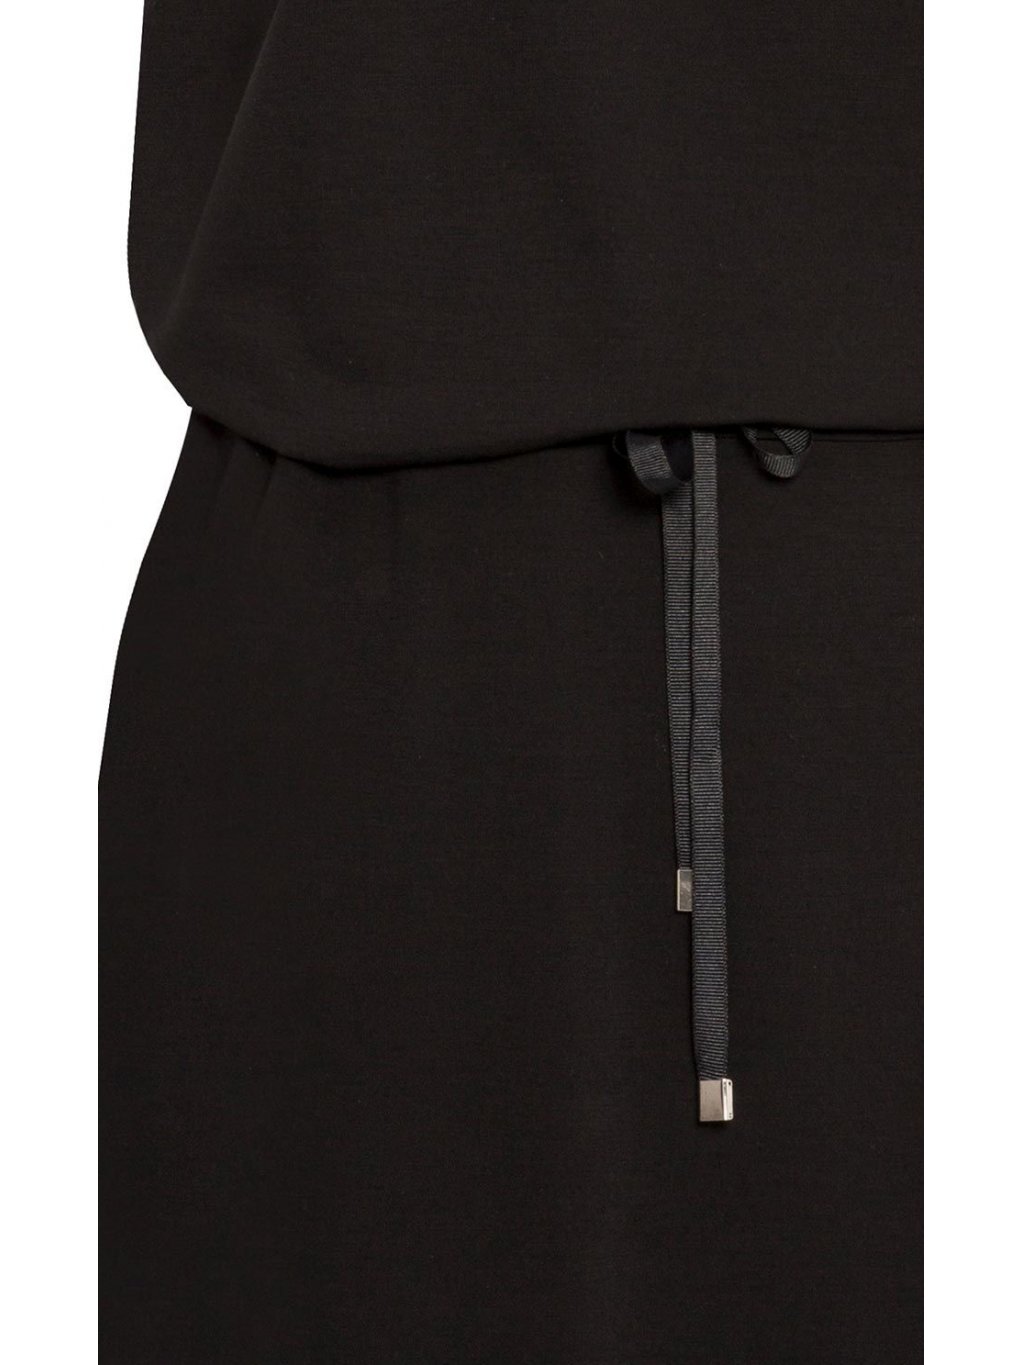 Šaty Zaps Erazma černé s efektní krajkou